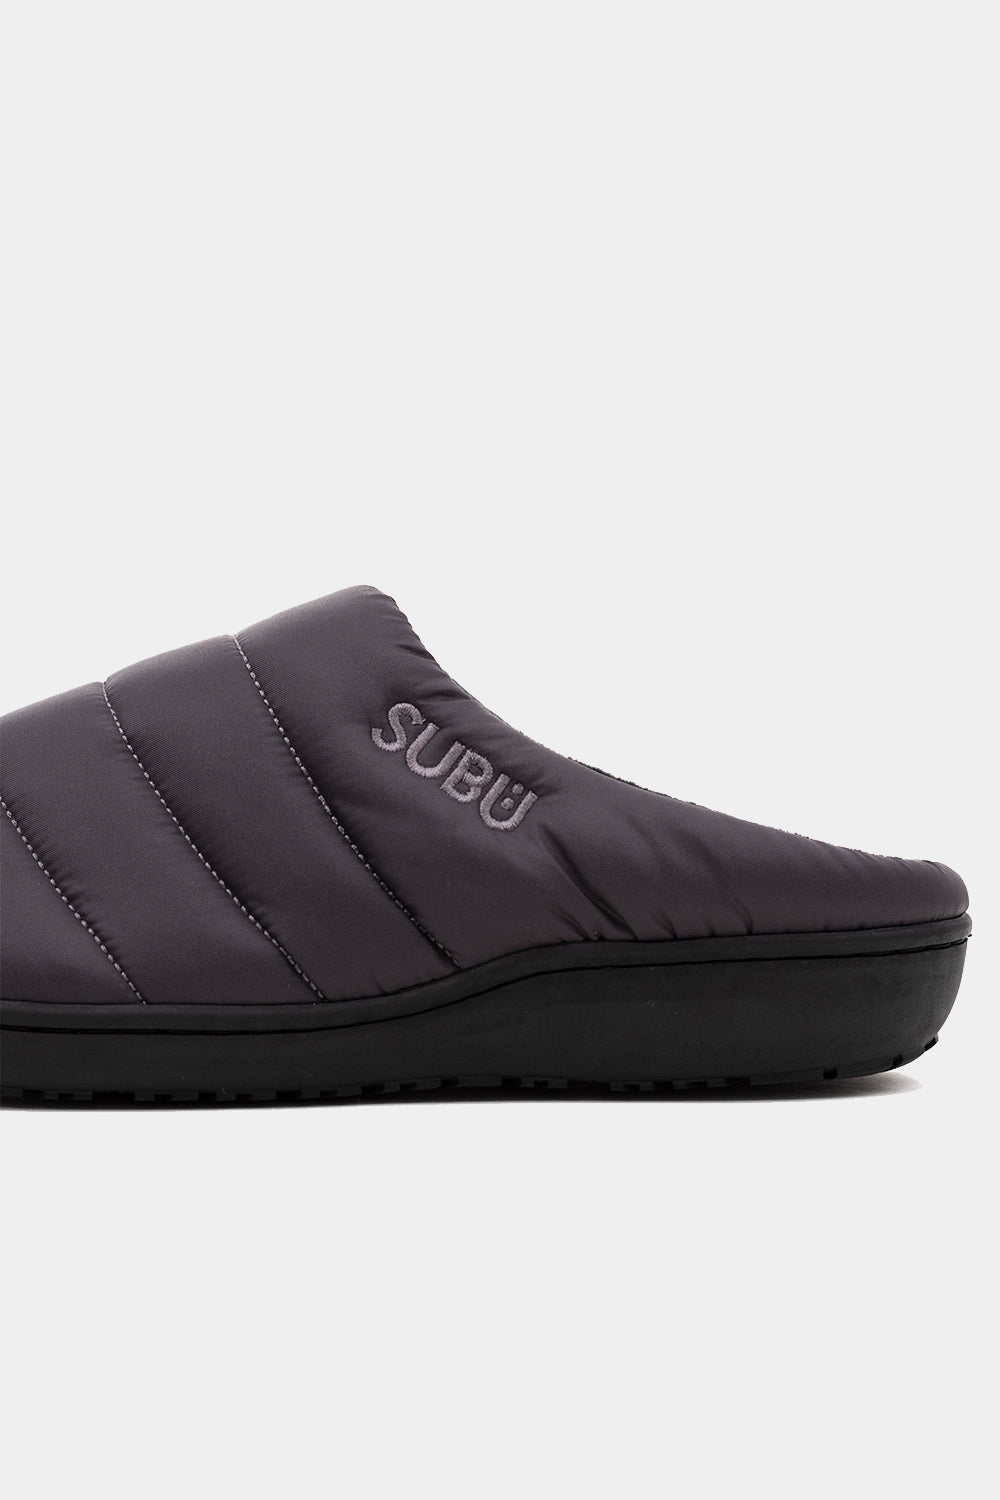 SUBU Indoor Outdoor Slippers (Steel Grey)